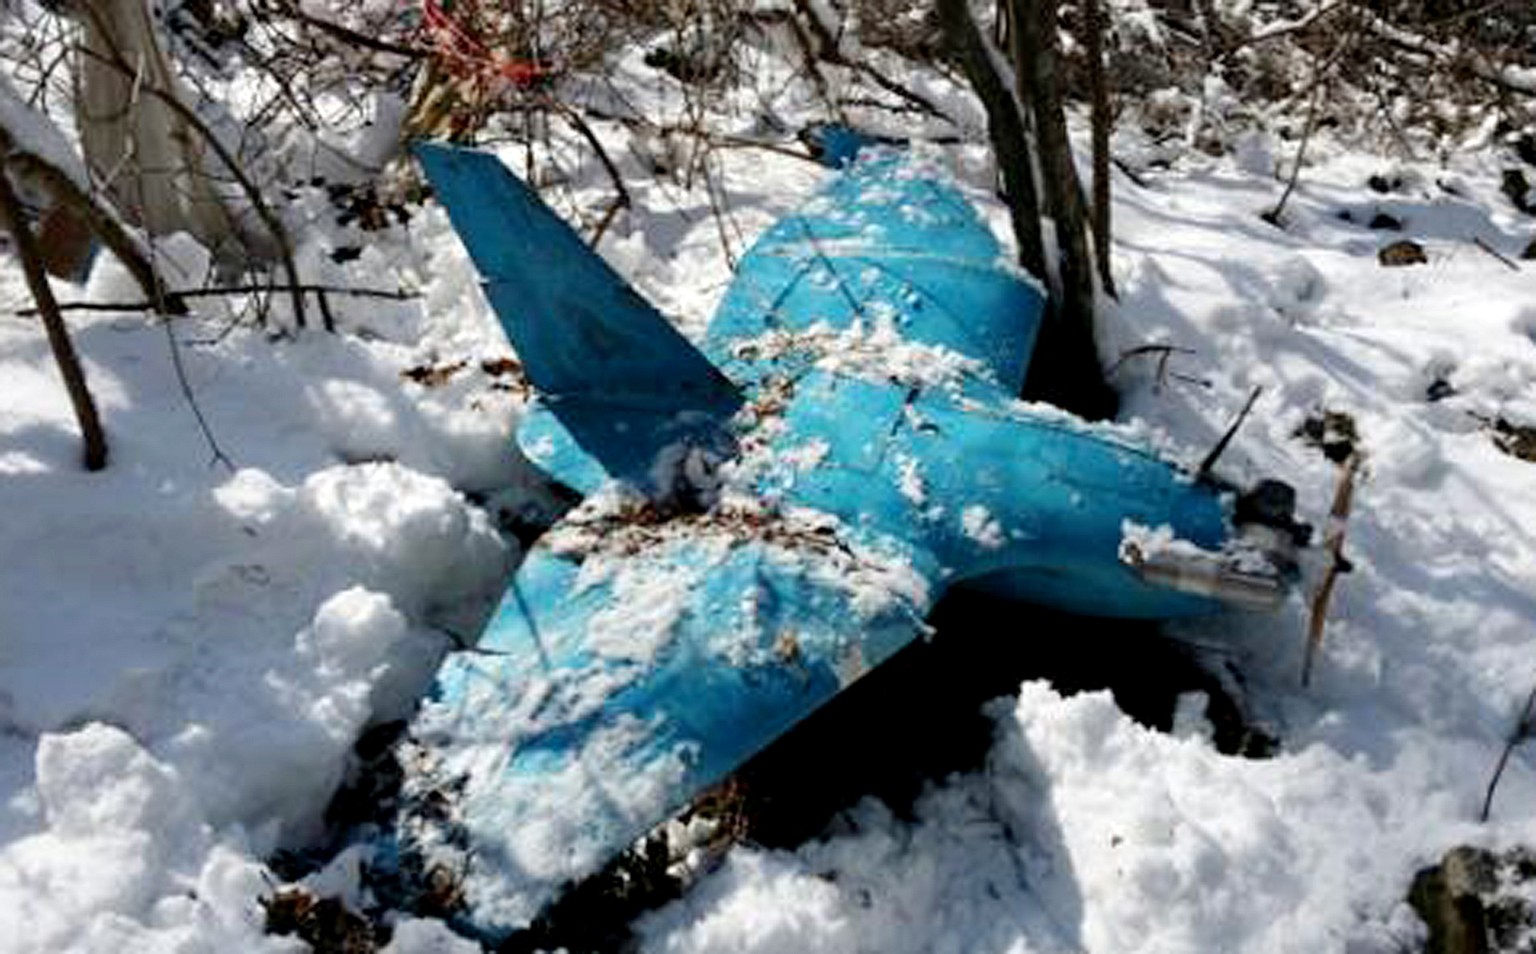 Diese Drohne wurde am 6. April 2014 im südkoreanischen Samcheok gefunden.